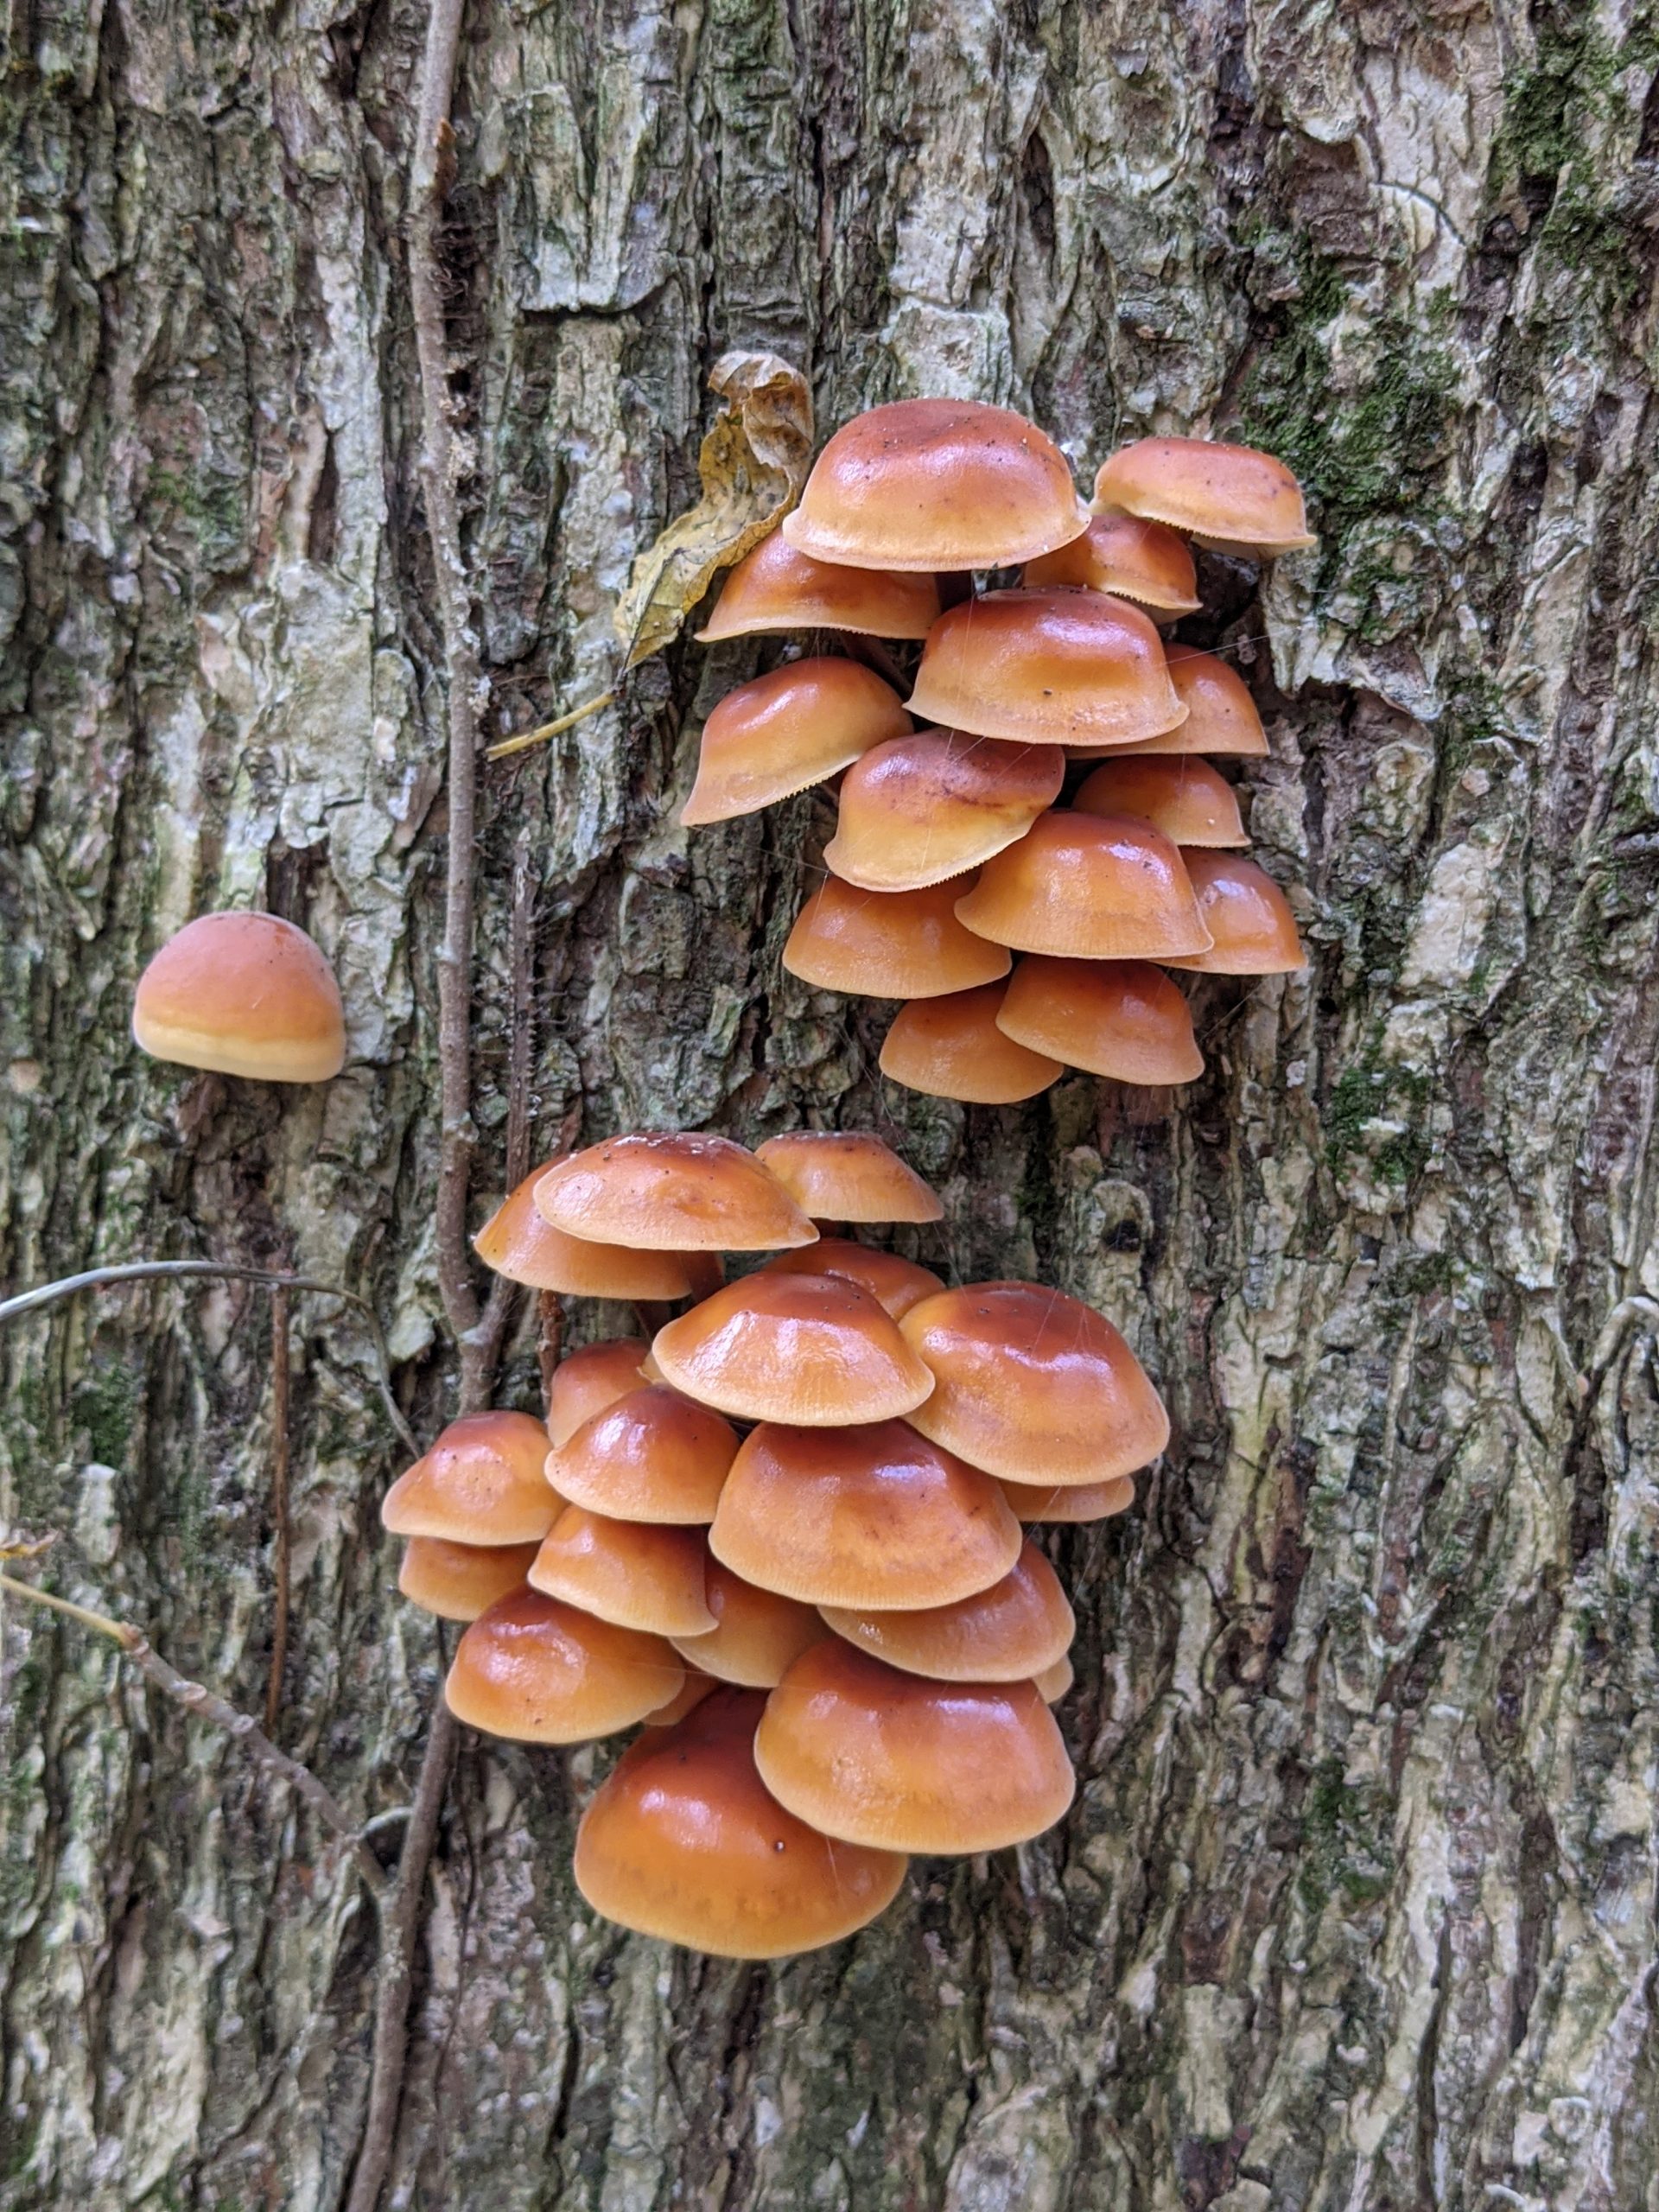 Bracket mushrooms - October 2020